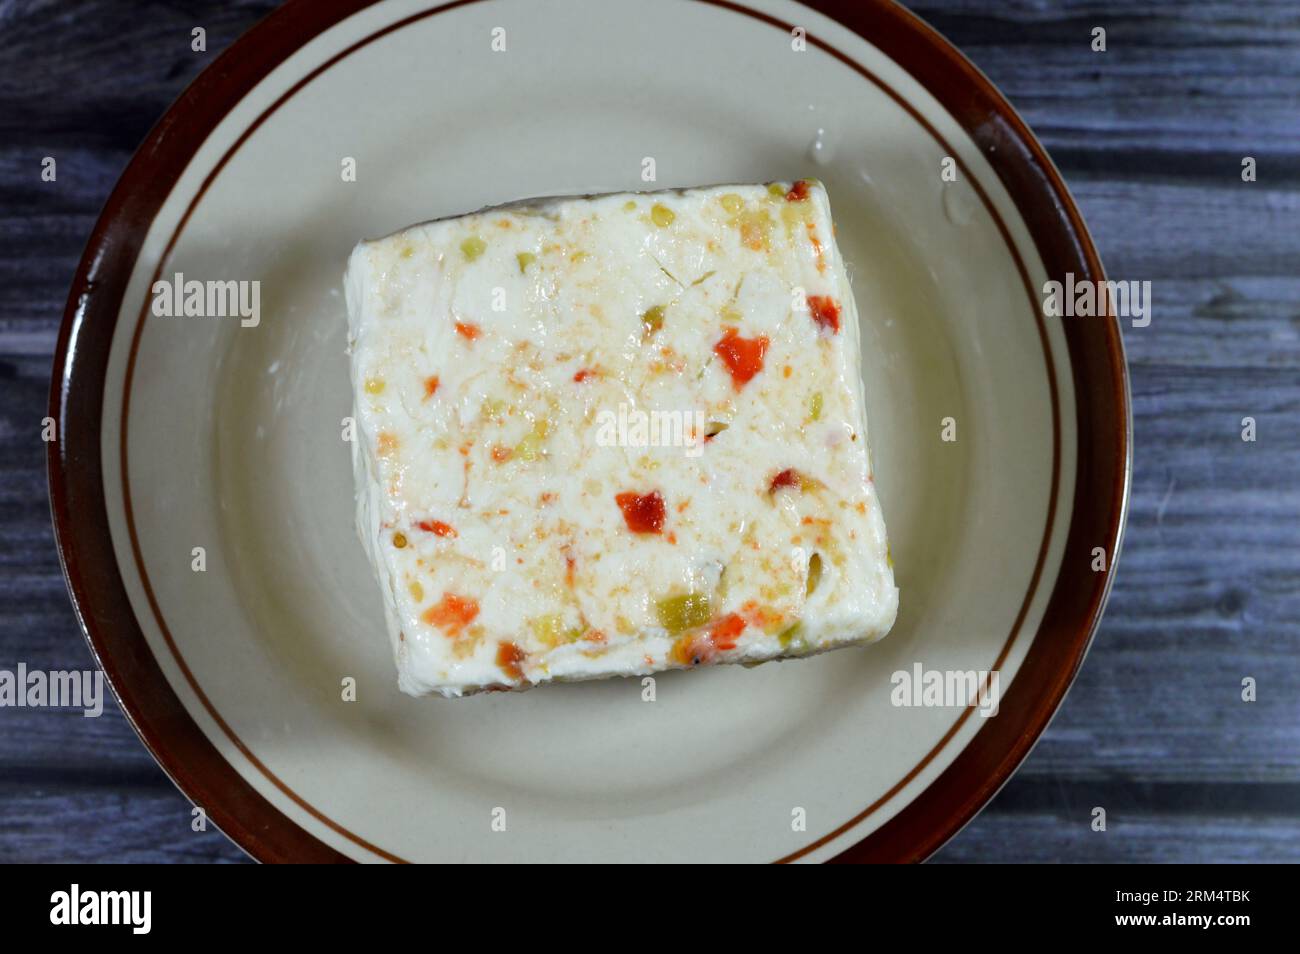 Une assiette avec un cube de baril égyptien Baramily fromage blanc avec des tranches de poivrons rouges et verts, un fromage traditionnel du Moyen-Orient à base de pasteur Banque D'Images